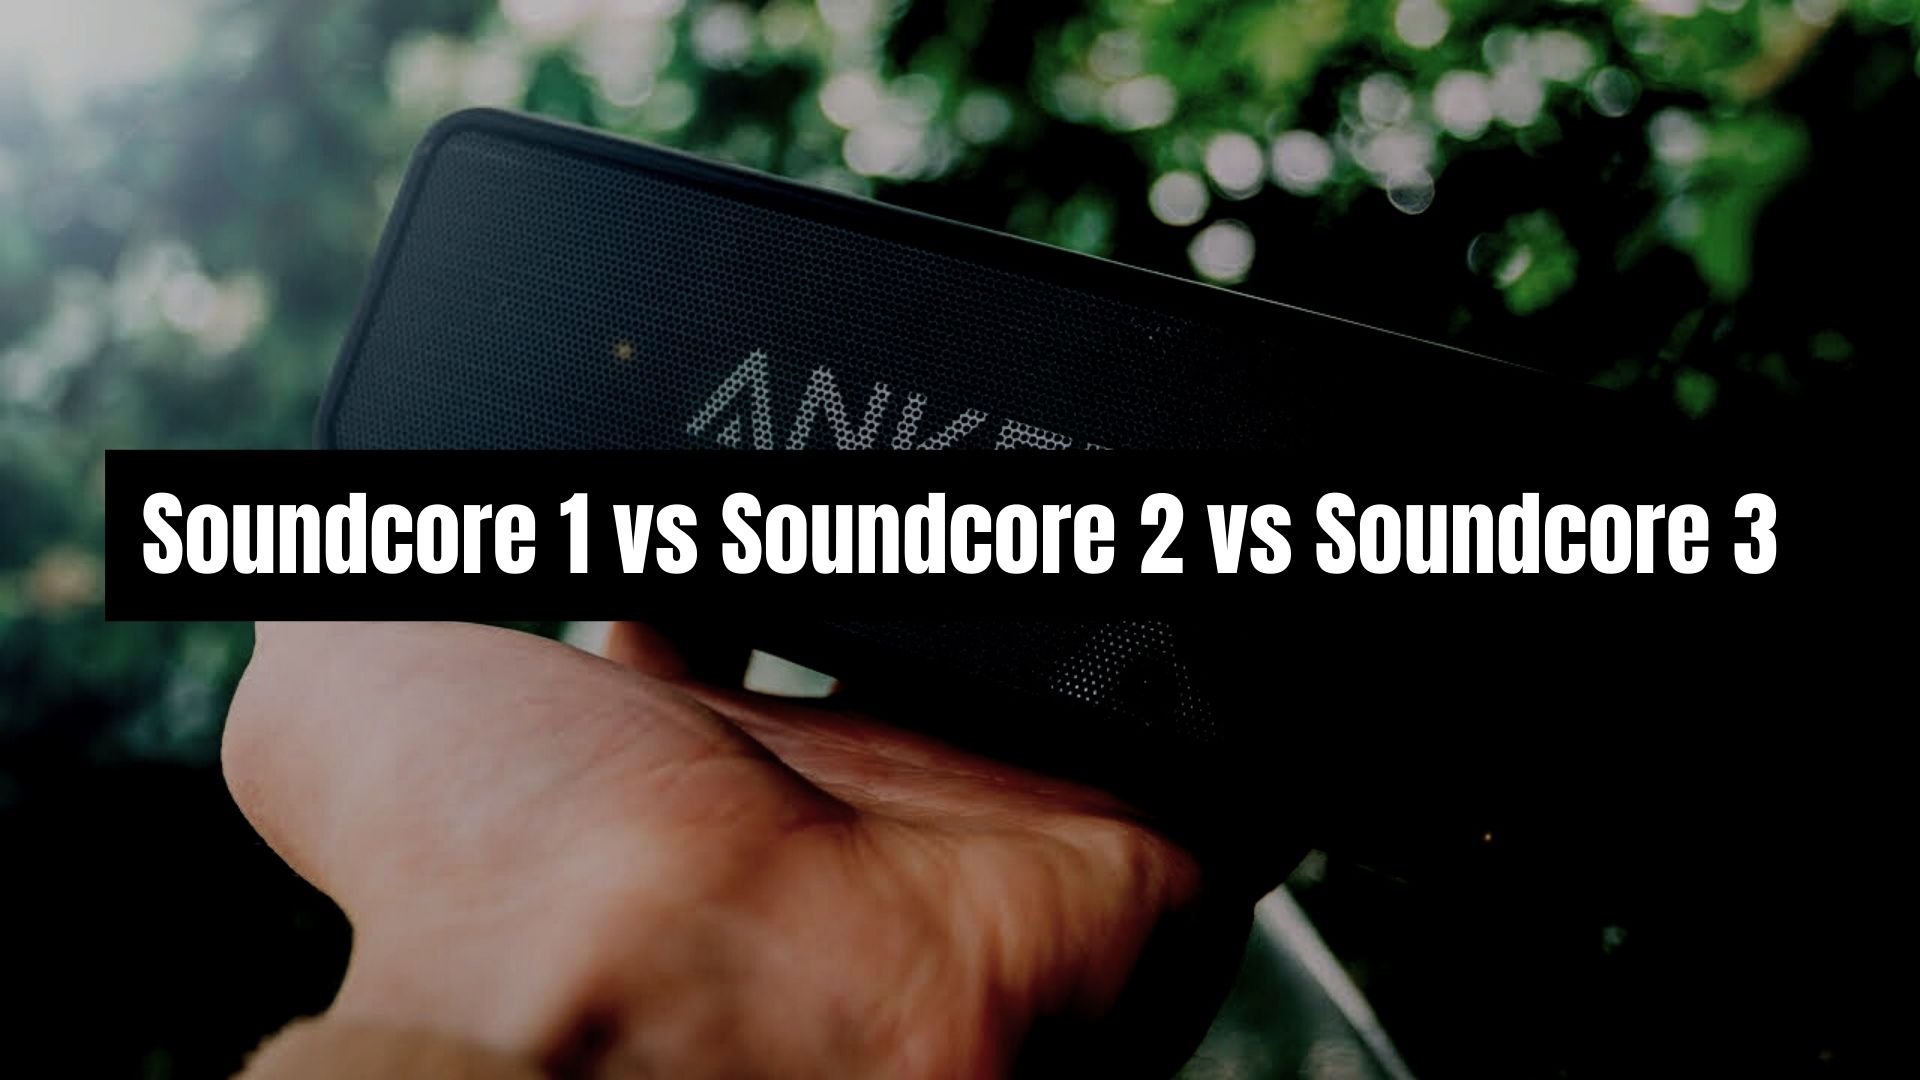 Soundcore 1 vs Soundcore 2 vs Soundcore 3